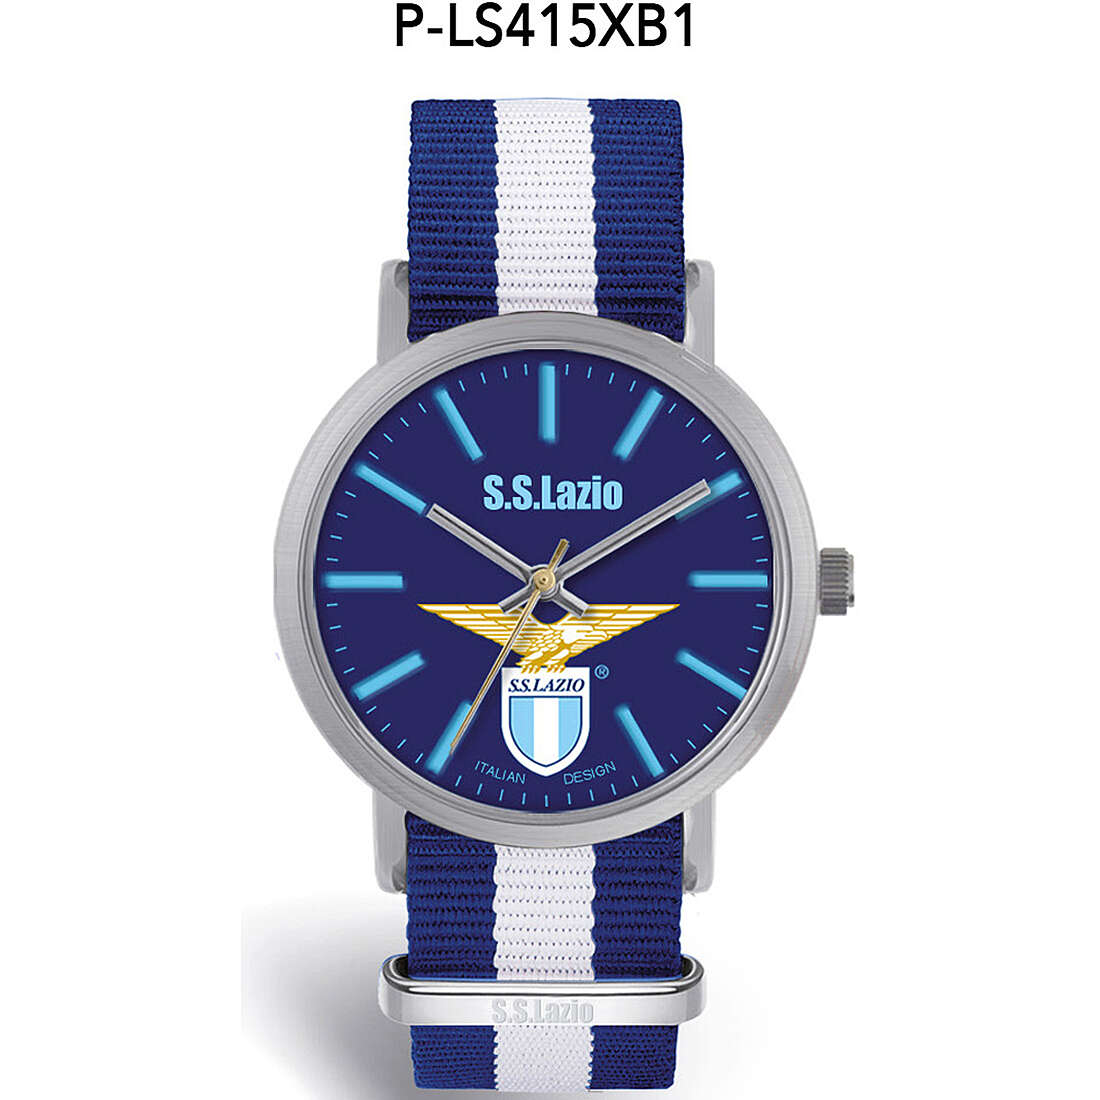 orologio solo tempo unisex S.S. Lazio - P-LS415XB1 P-LS415XB1